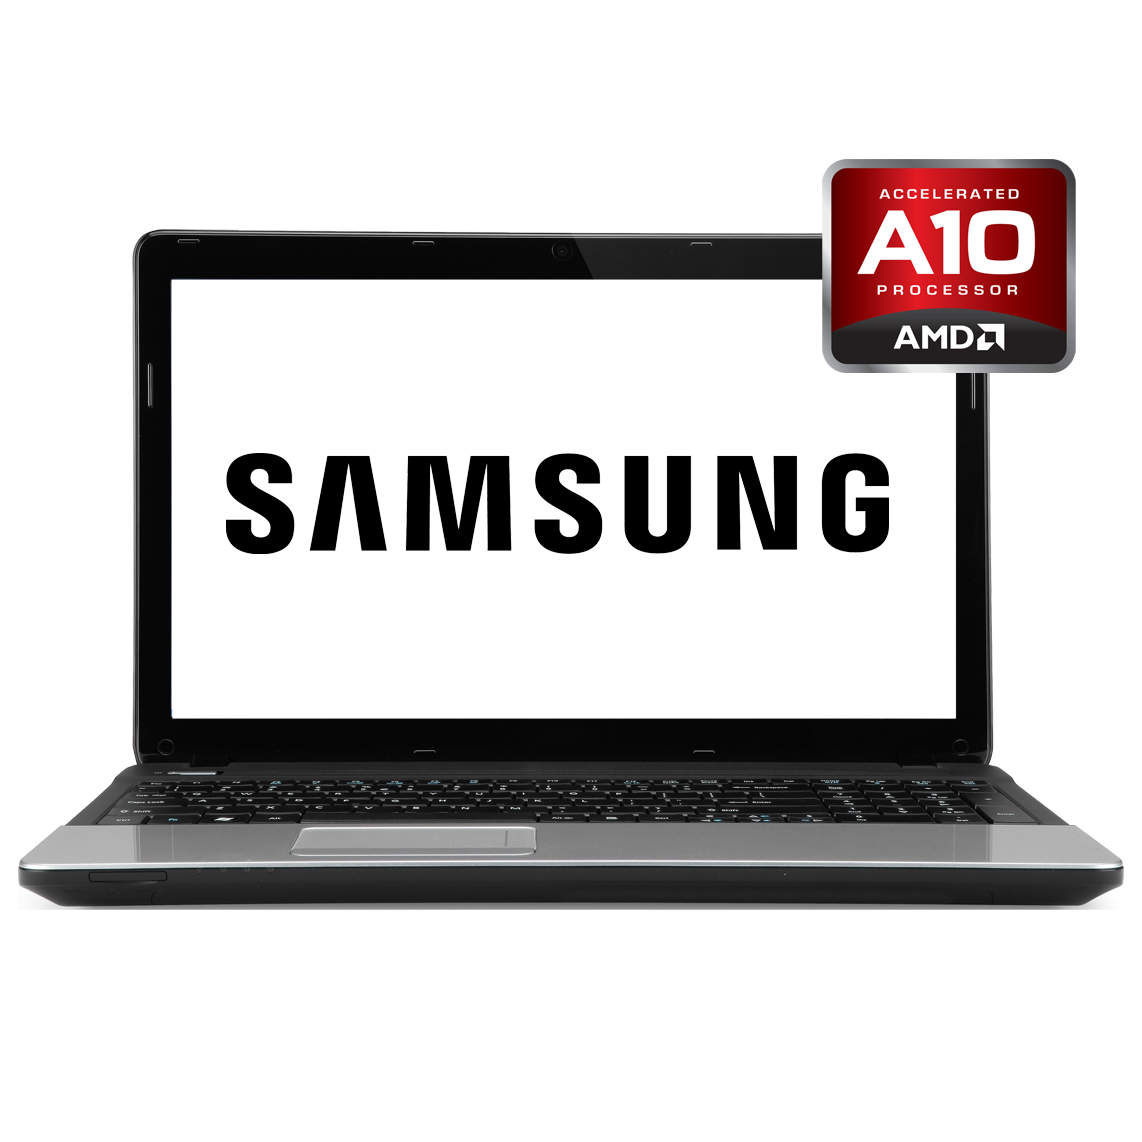 Samsung - 13 inch AMD A10